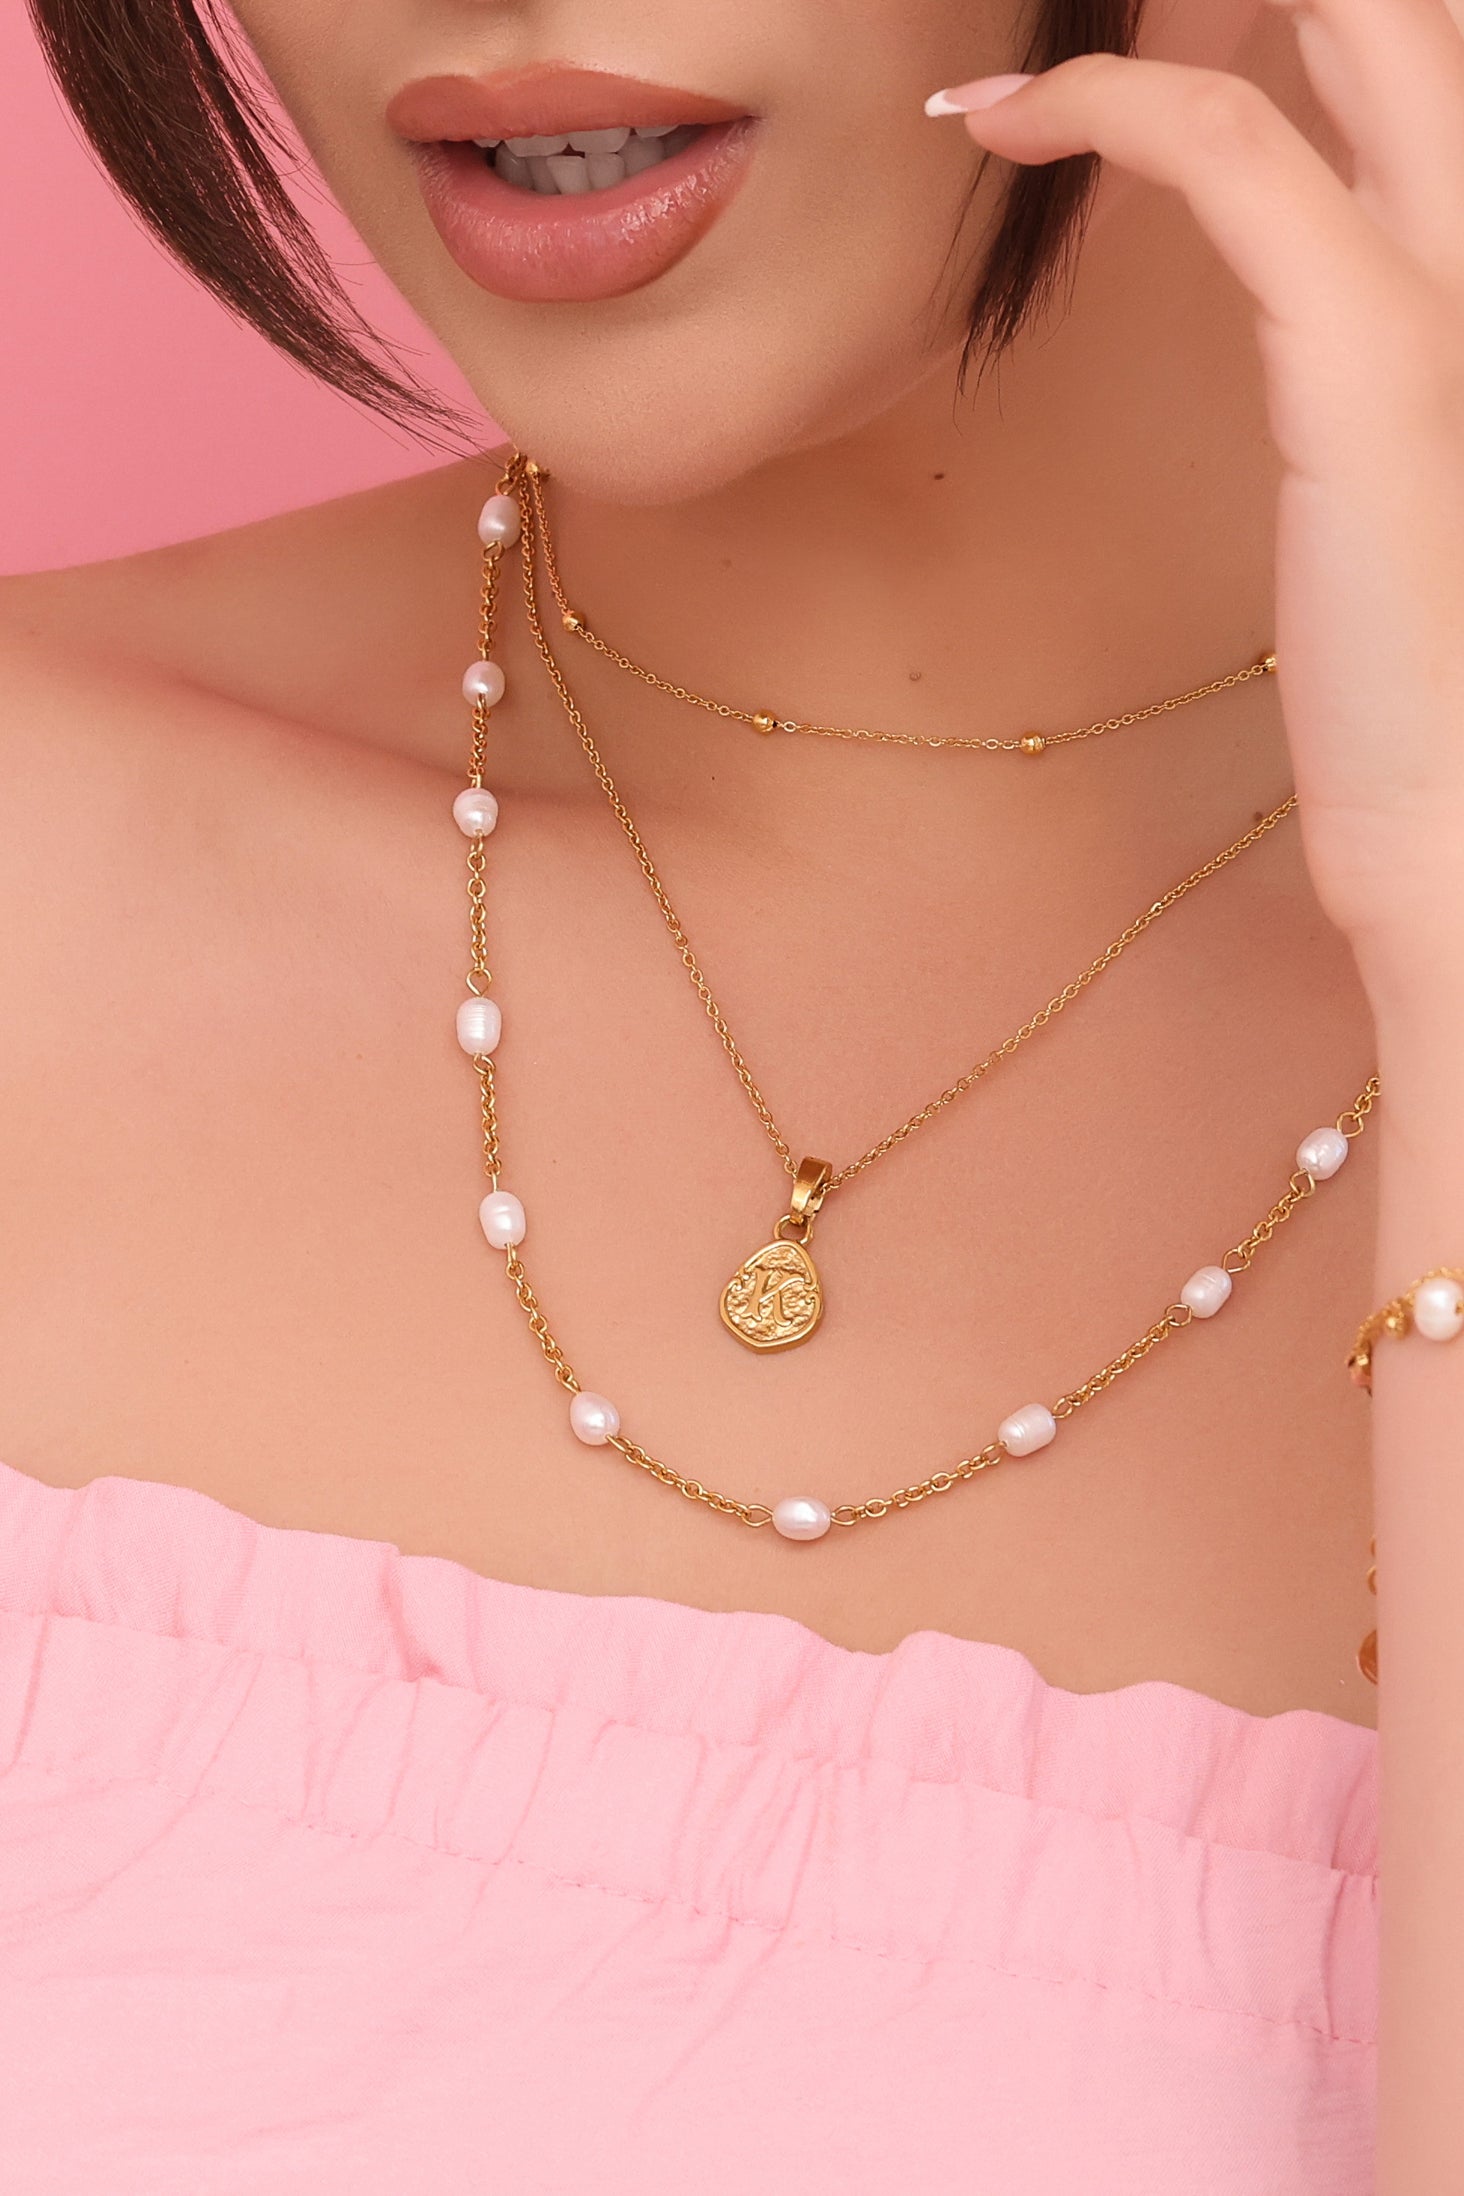 &quot;J&quot; Tberfil Letter Pendant with Petite Adjustable Chain Necklace